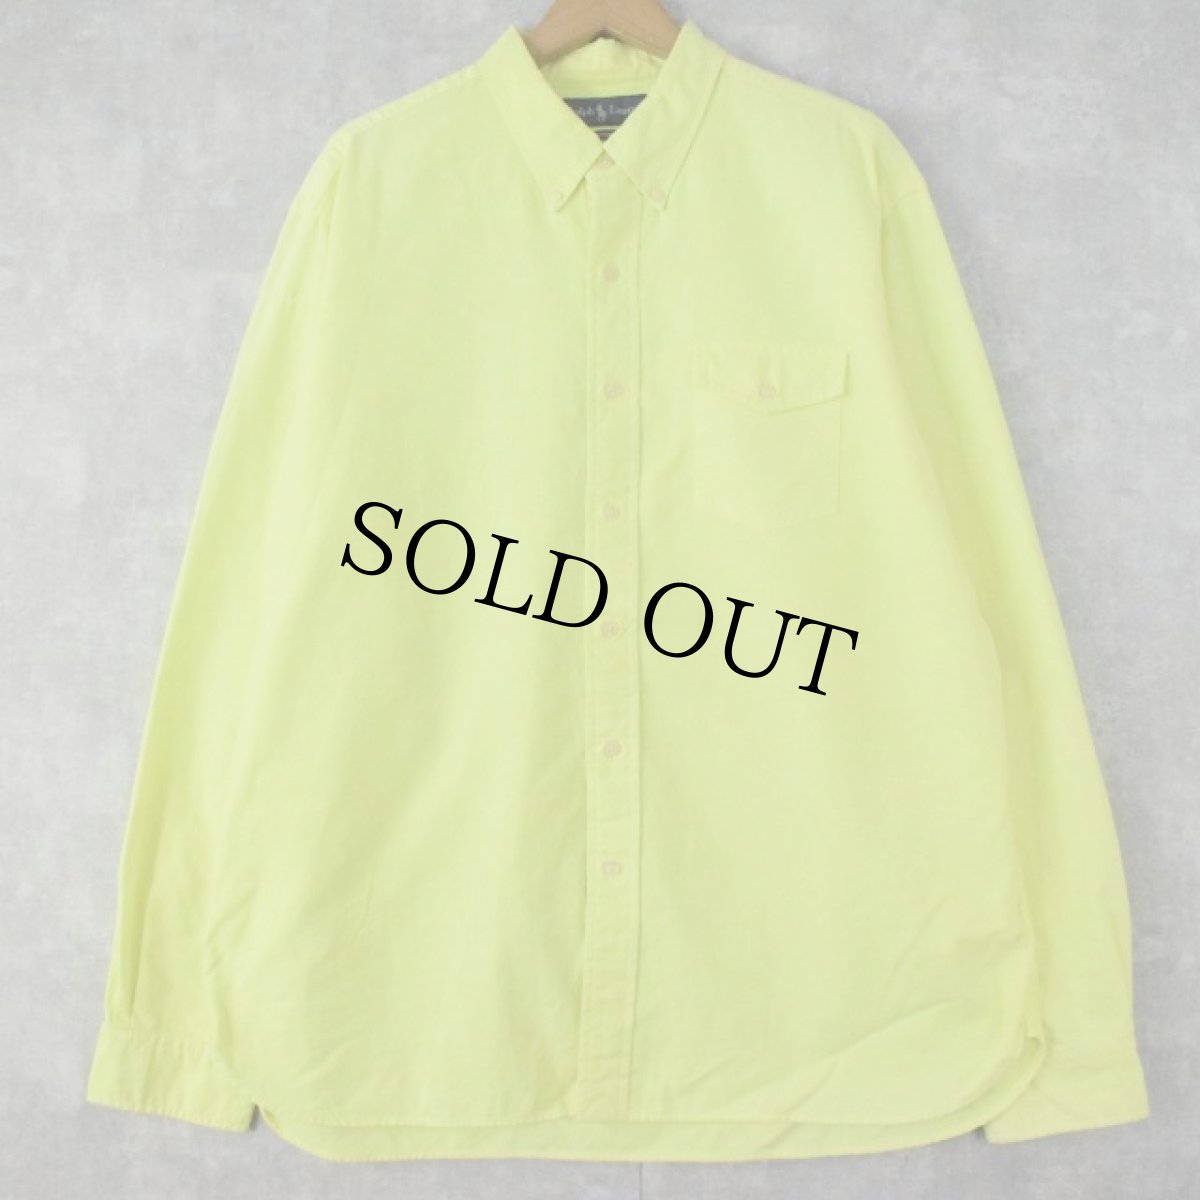 画像1: Ralph Lauren マチ付き ボタンダウンコットンシャツ XL (1)